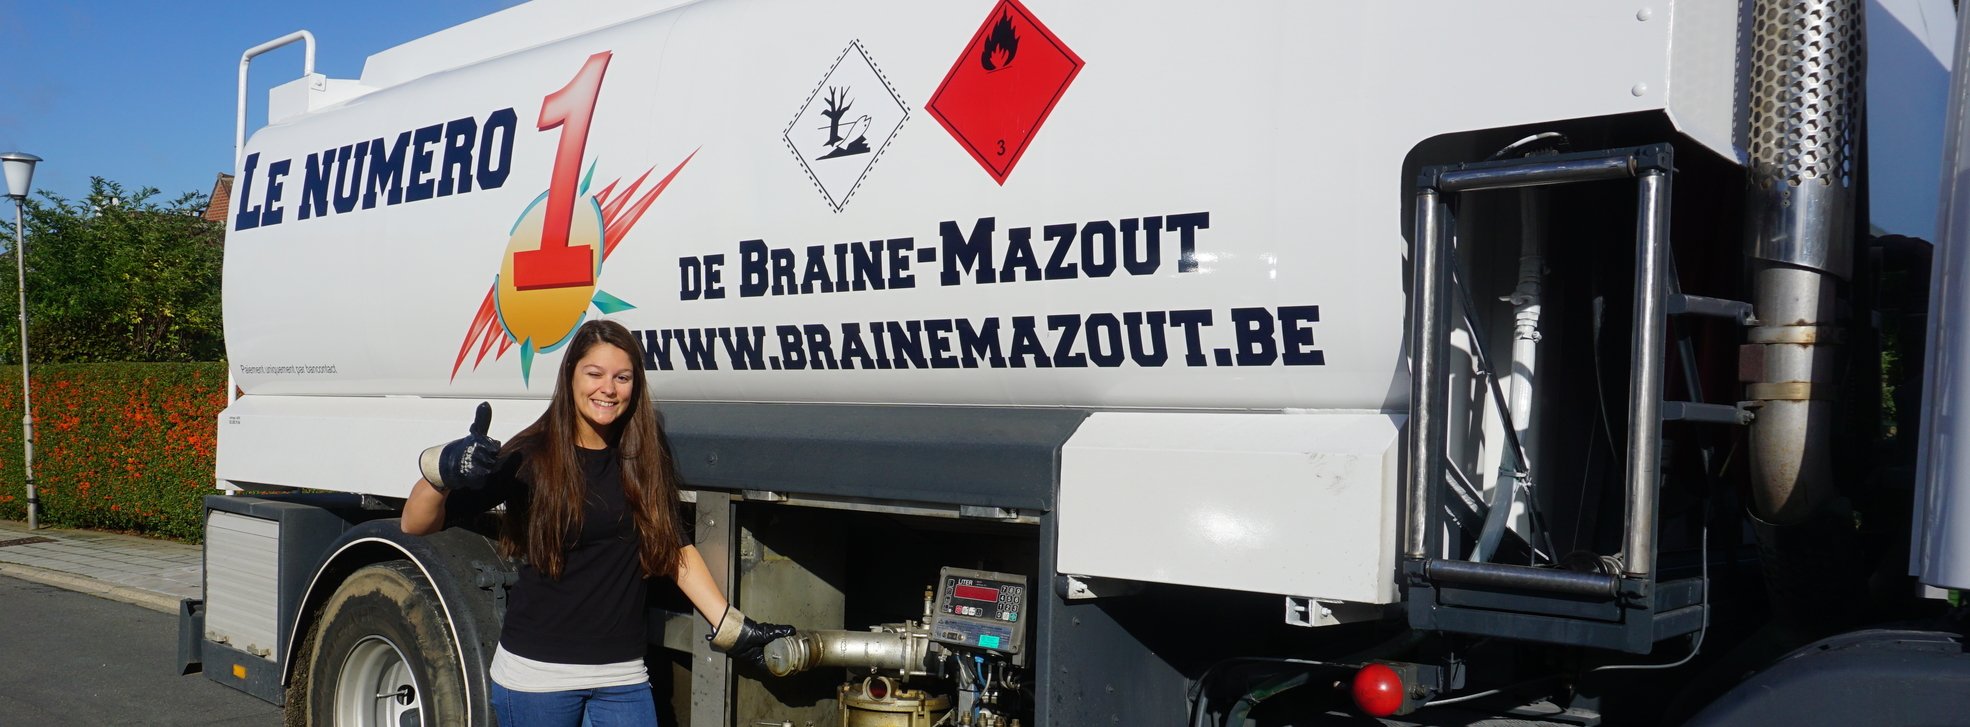 Le Numéro 1 de Braine-Mazout : votre mazout de chauffage au meilleur prix - Prix Du Mazout De Chauffage Le Moins Cher En Belgique